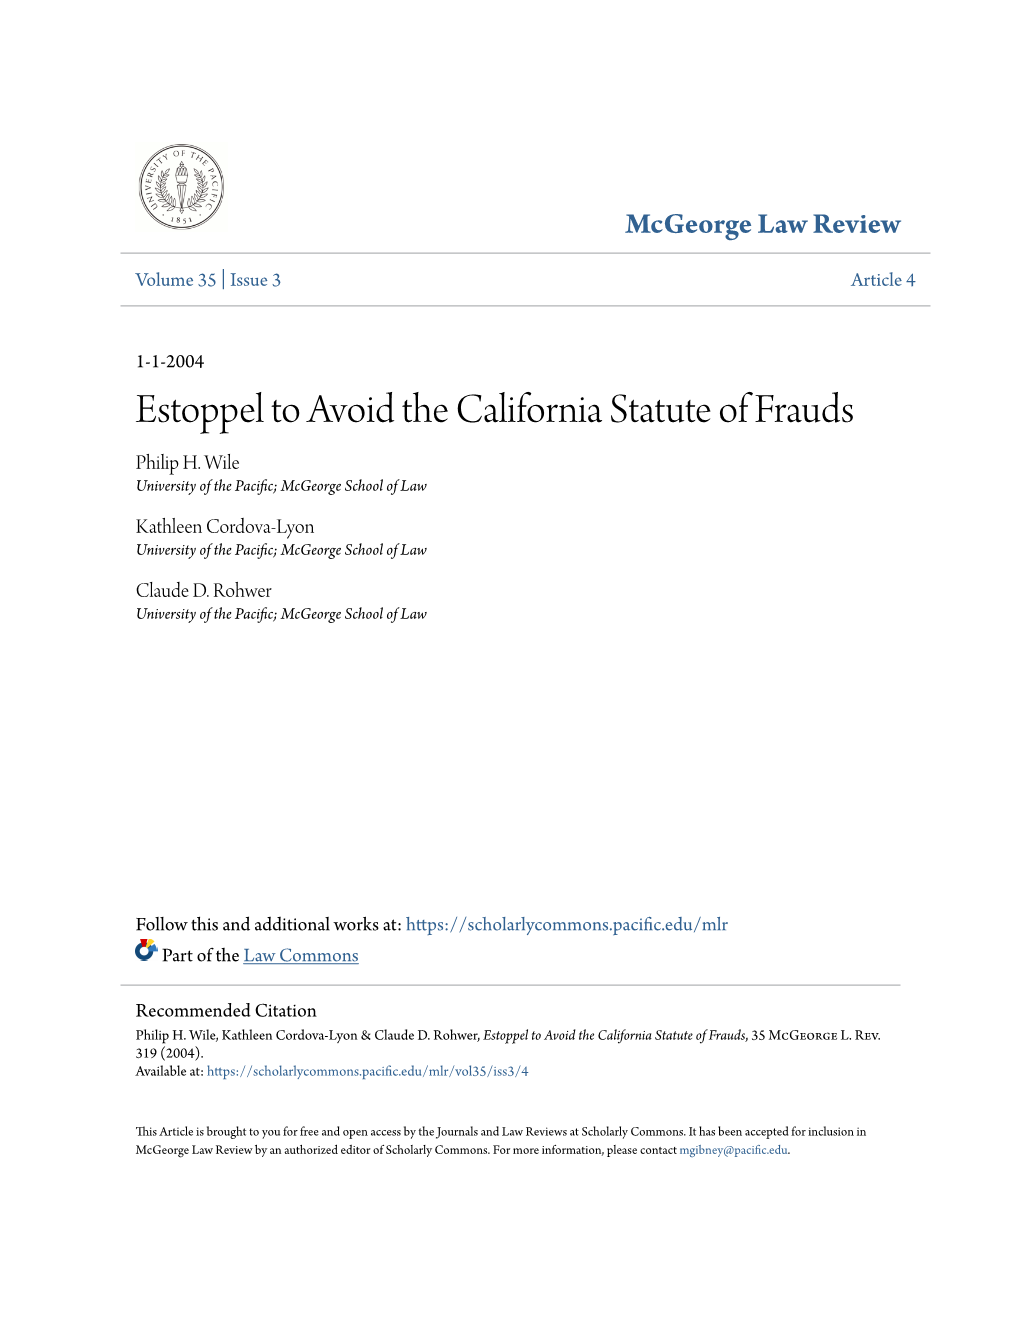 Estoppel to Avoid the California Statute of Frauds Philip H